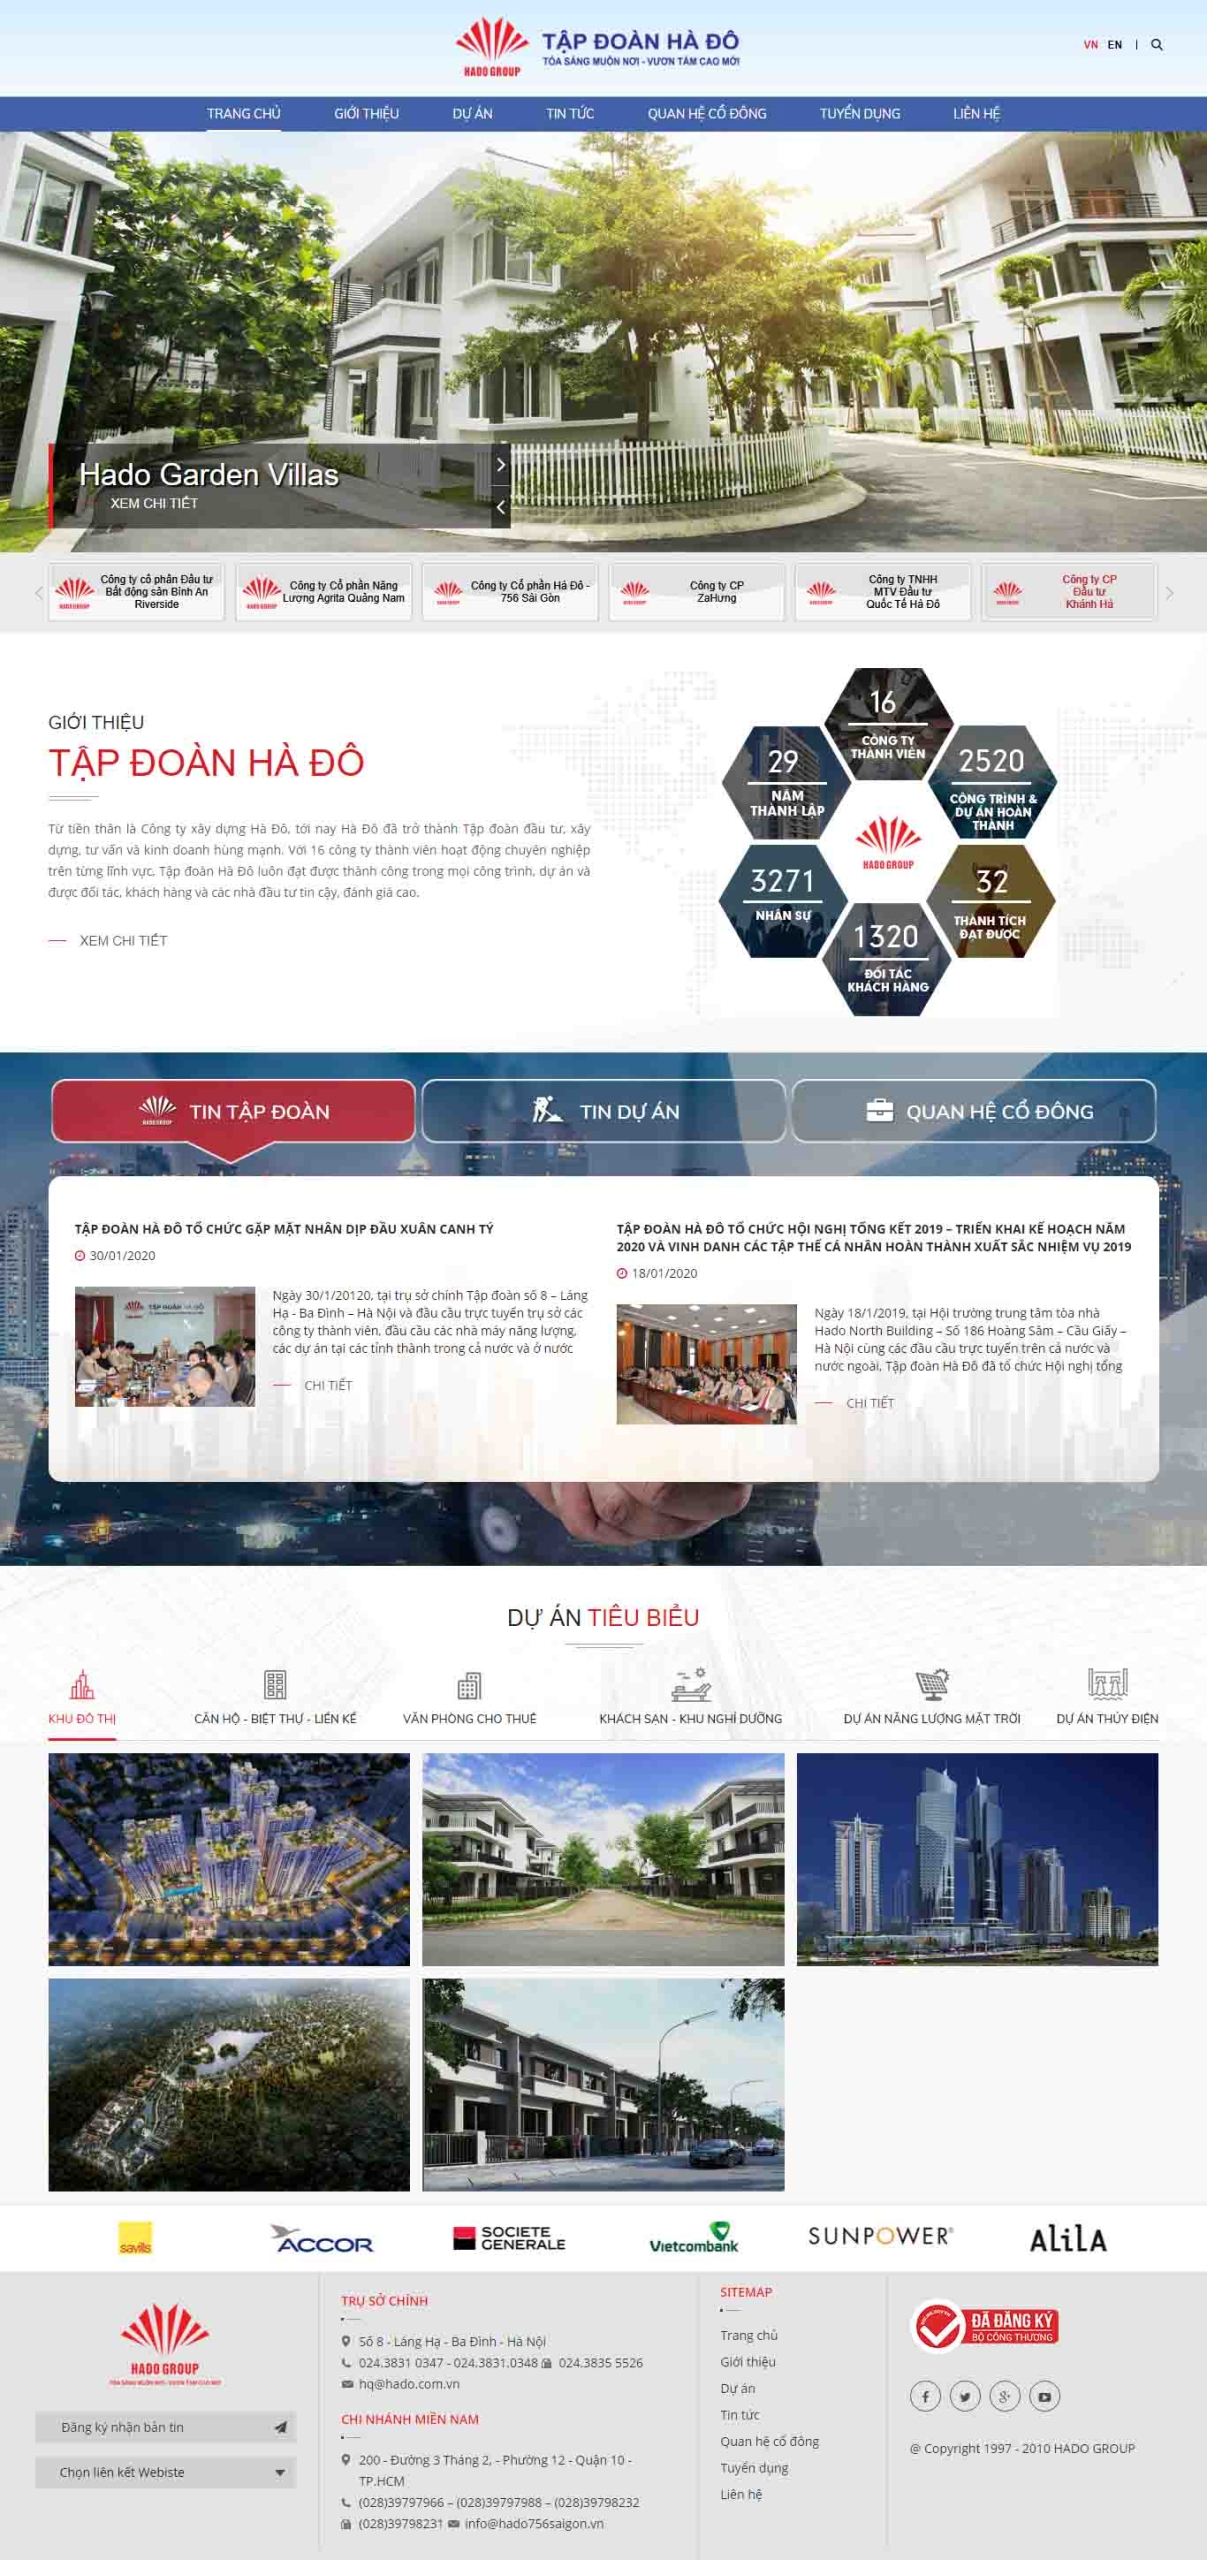 Mẫu giao diện thiết kế website bất động sản dành cho doanh nghiệp